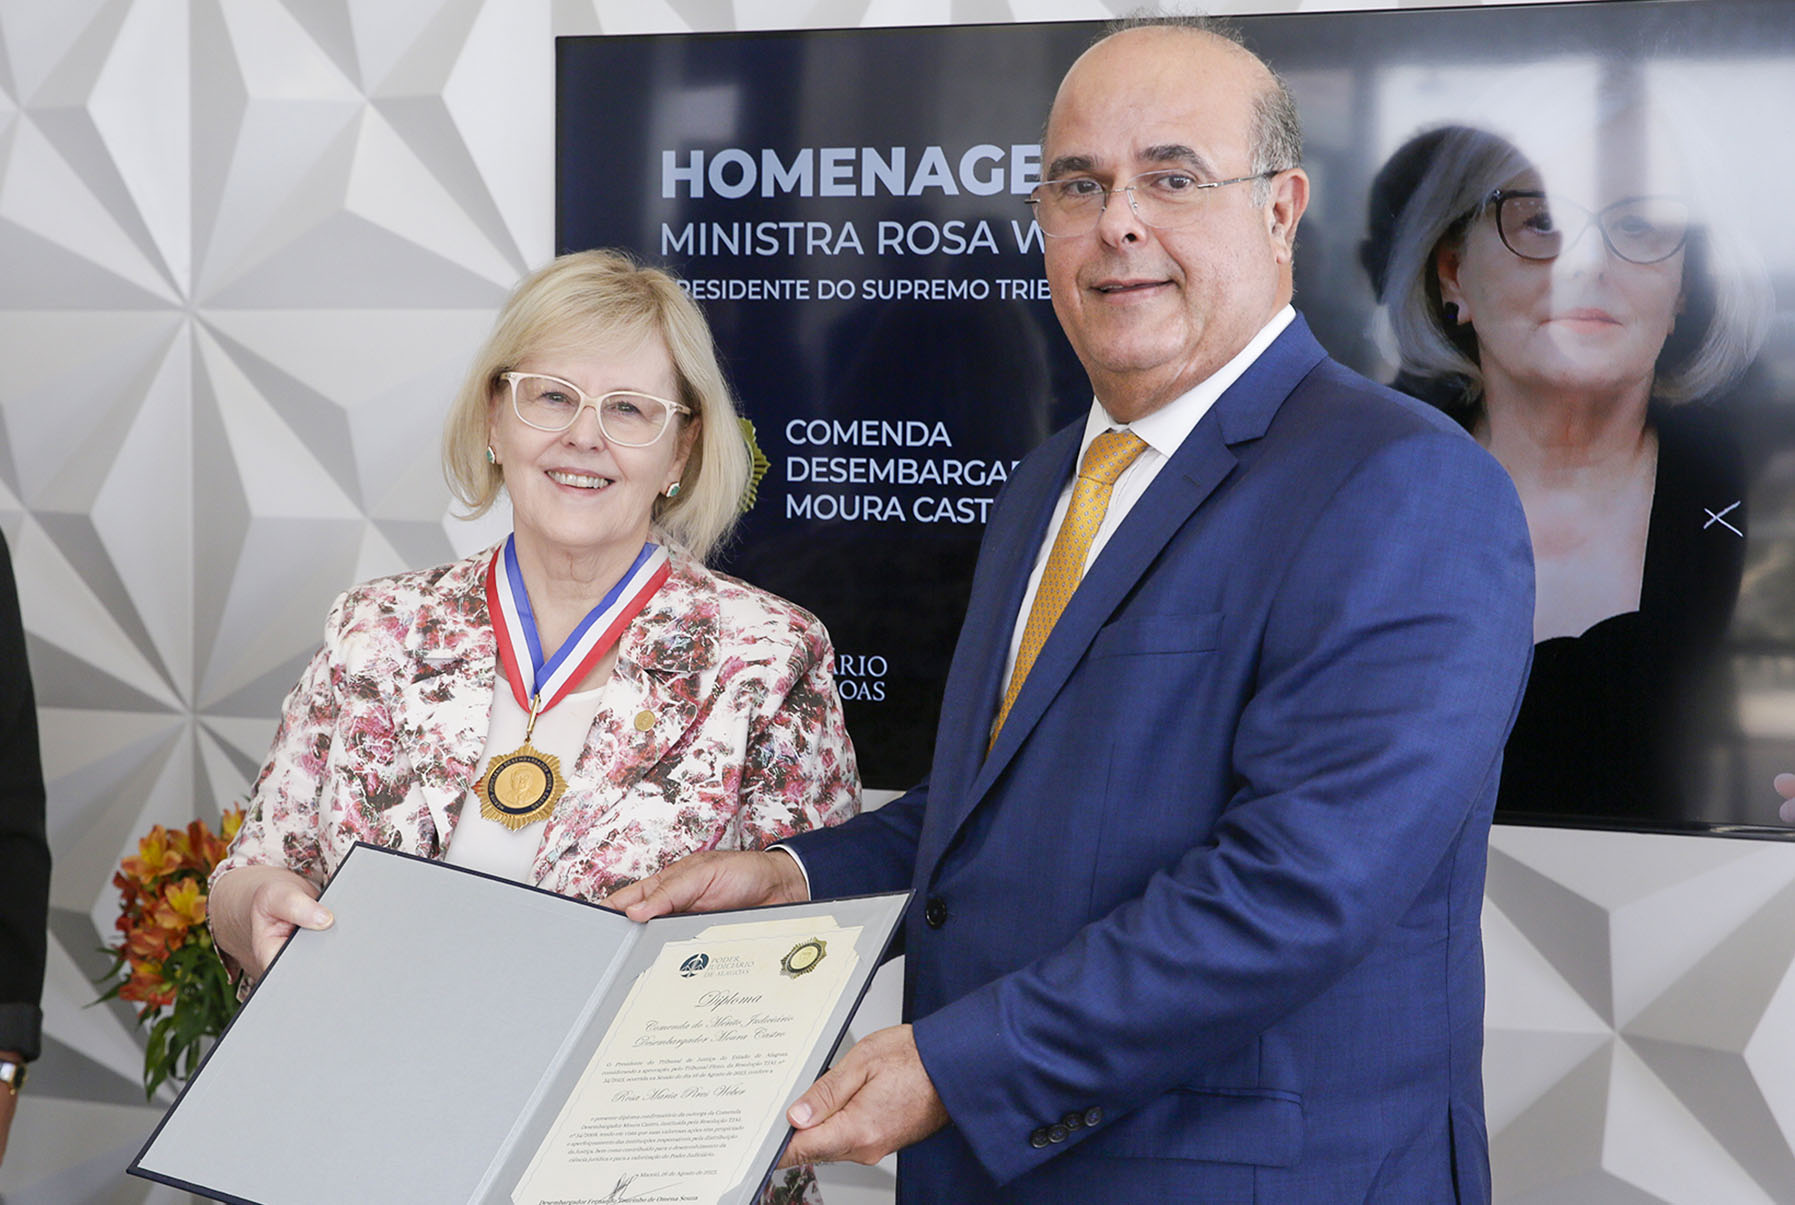 You are currently viewing Homenagem: ministra Rosa Weber recebe comenda da Justiça alagoana